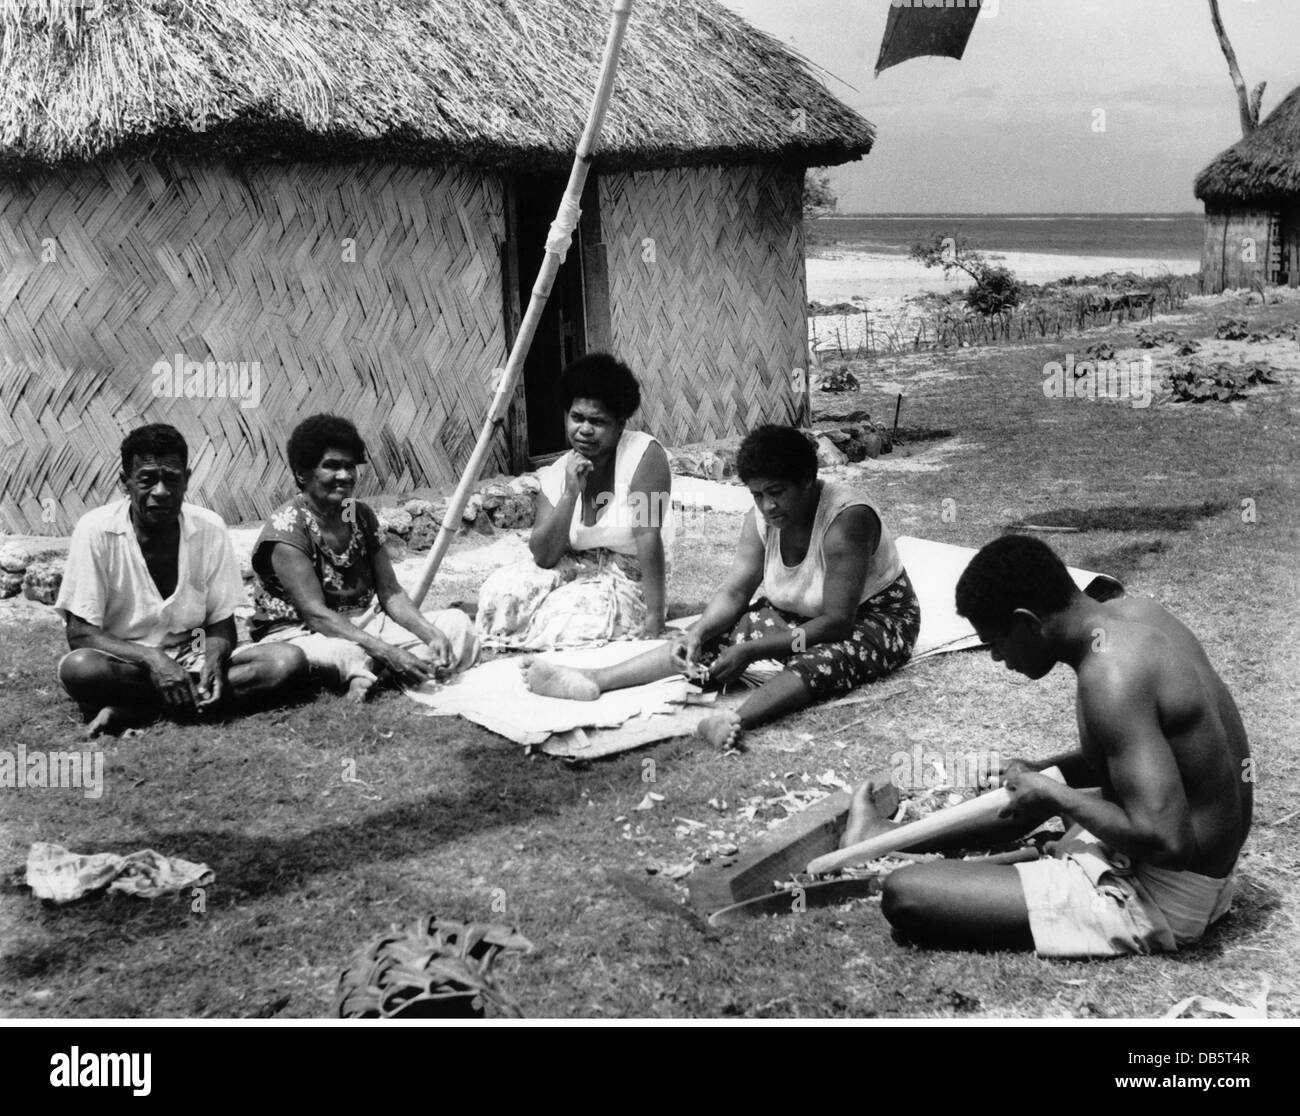 Géographie / Voyage, Fidji, personnes, autochtones faisant l'artisanat, vers 1960, droits additionnels-Clearences-non disponible Banque D'Images